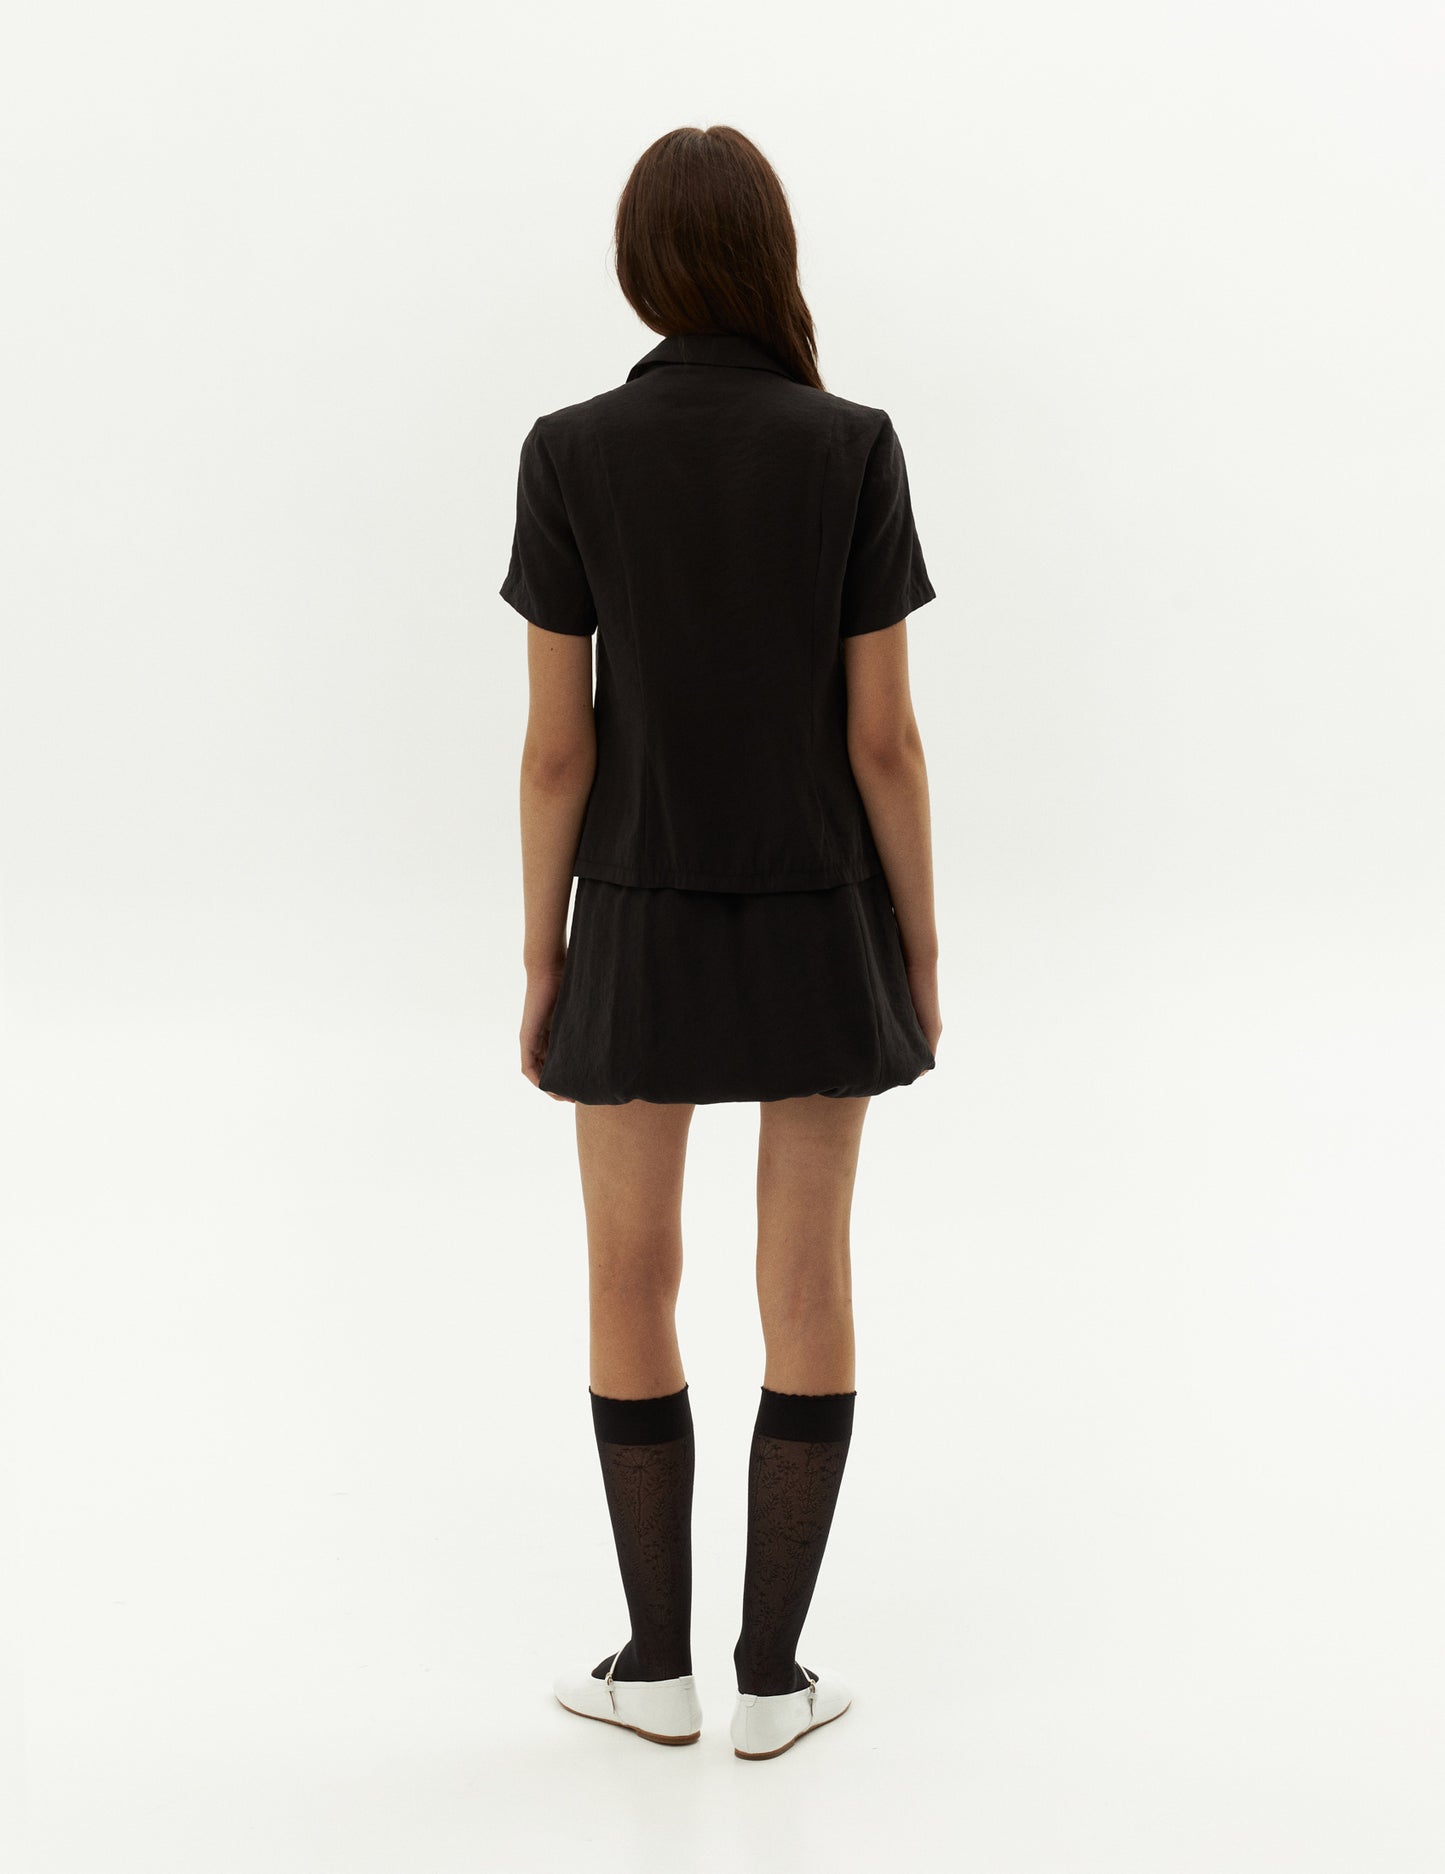 Balloon Short Skirt, чорна спідниця на резинці від бренду FORMA